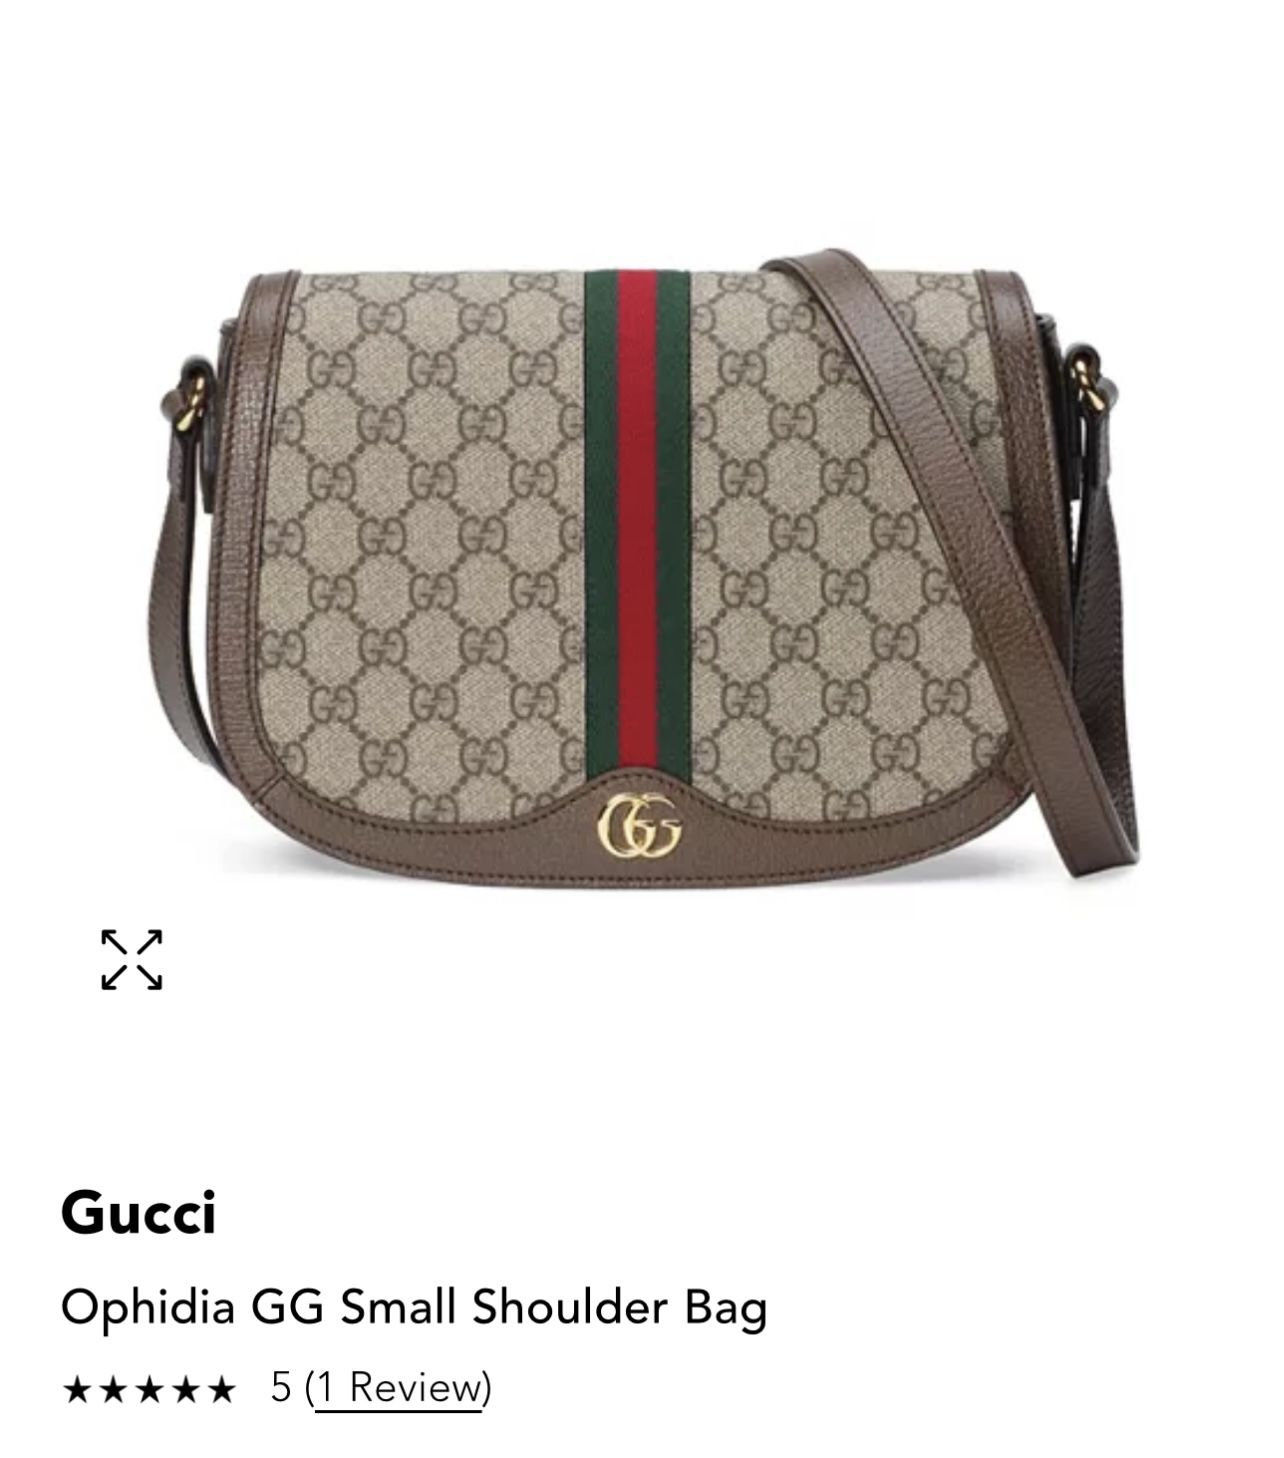 Gucci Small Shoulder Bag